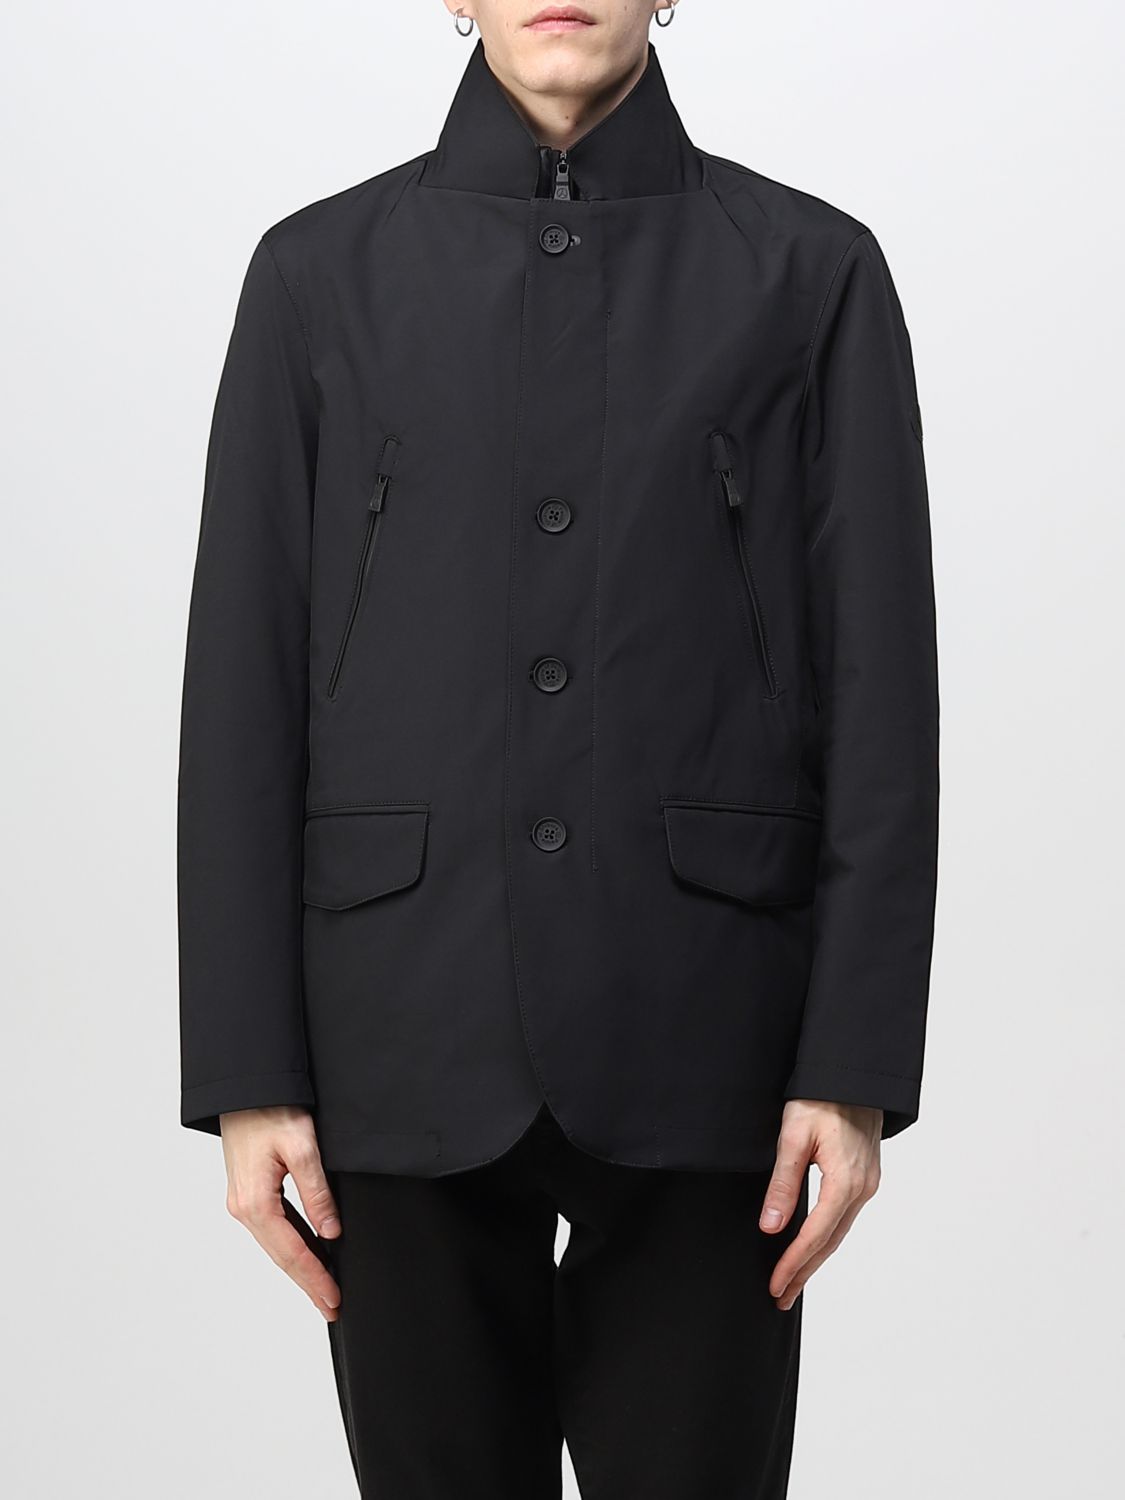 PEOPLE OF SHIBUYA: jacket for man - Black | People Of Shibuya jacket ...